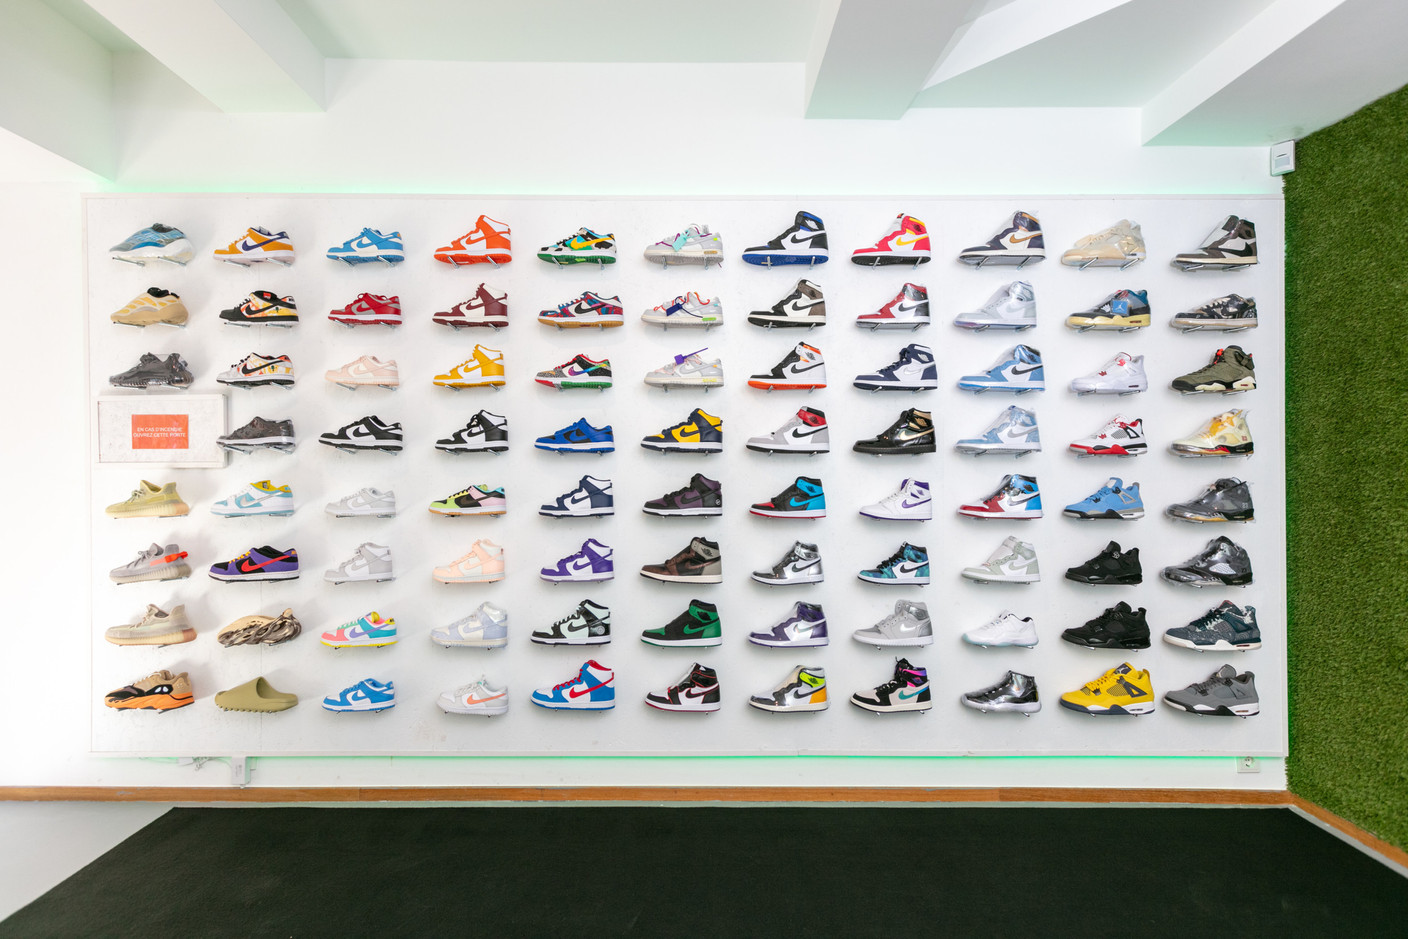 Un rayon composé de Nike Dunk, Air Jordan 4, Yeezy et autres. (Photo: Romain Gamba / Maison Moderne)